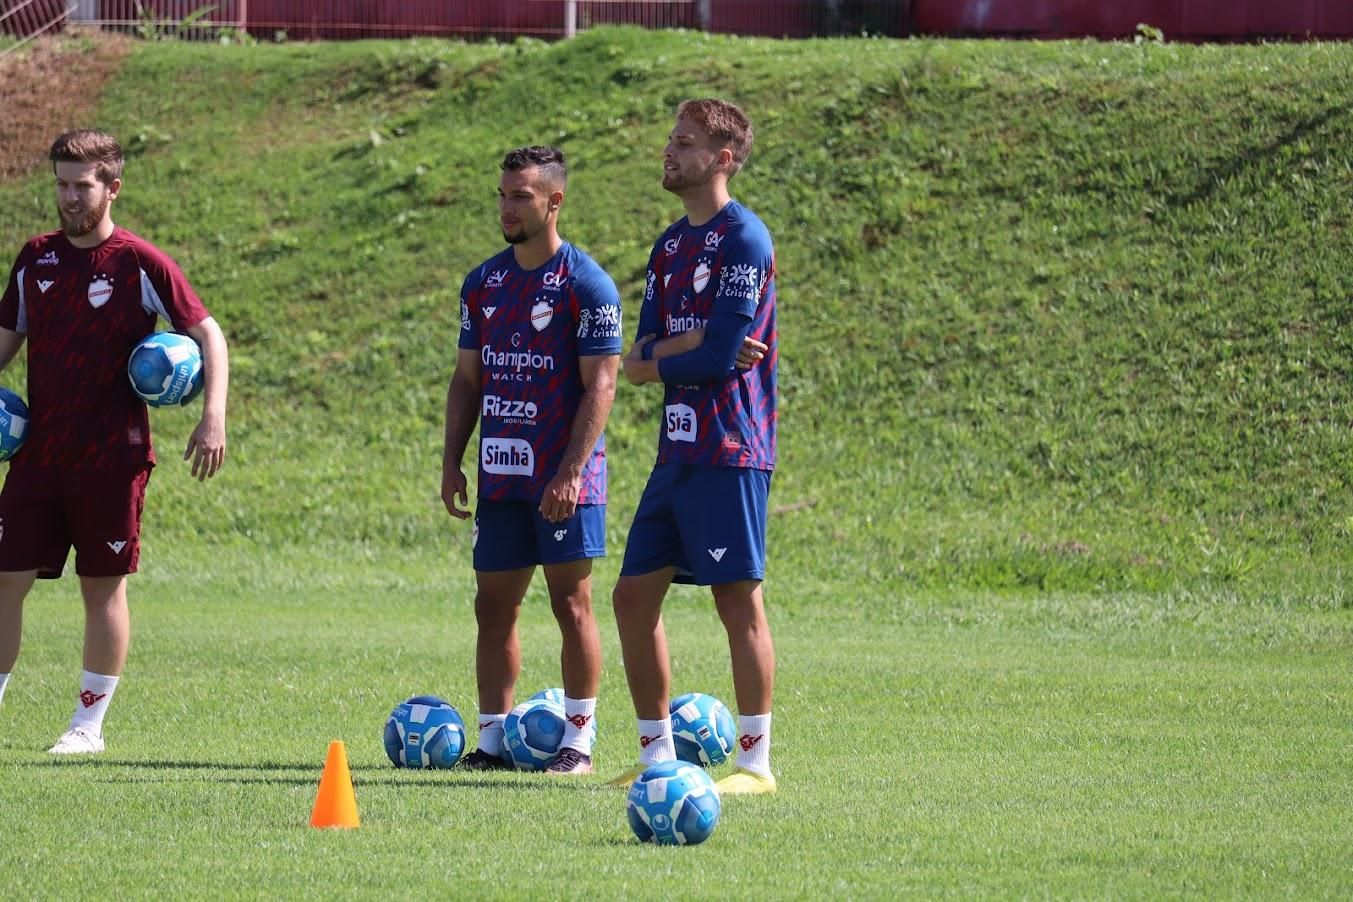 Após cinco semanas fora, Lucas Cardoso retorna aos treinos no Guarani